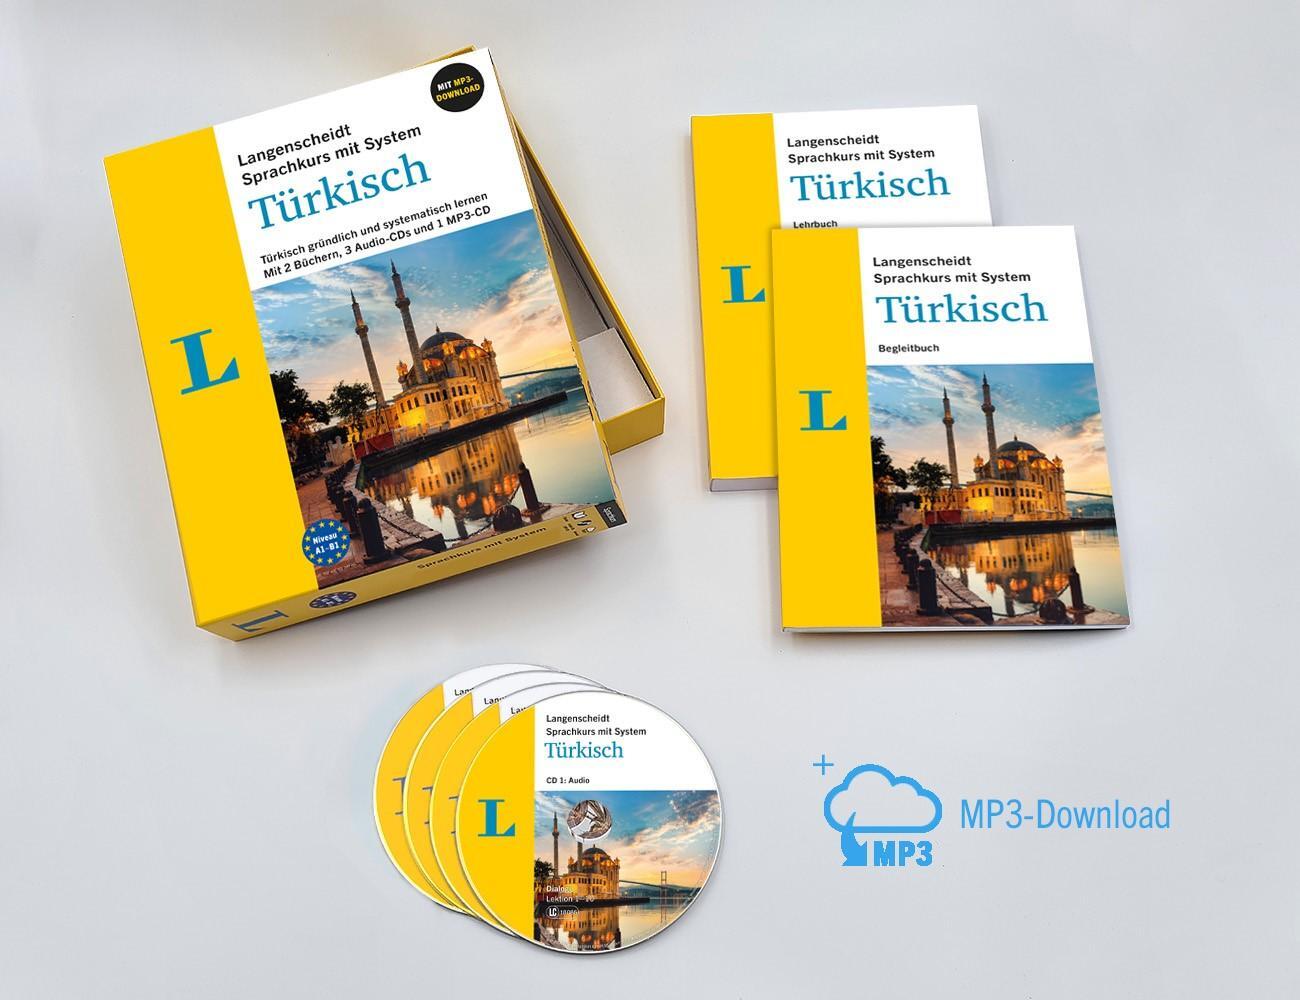 Bild: 9783125635890 | Langenscheidt Türkisch mit System | Buch | Langenscheidt mit System